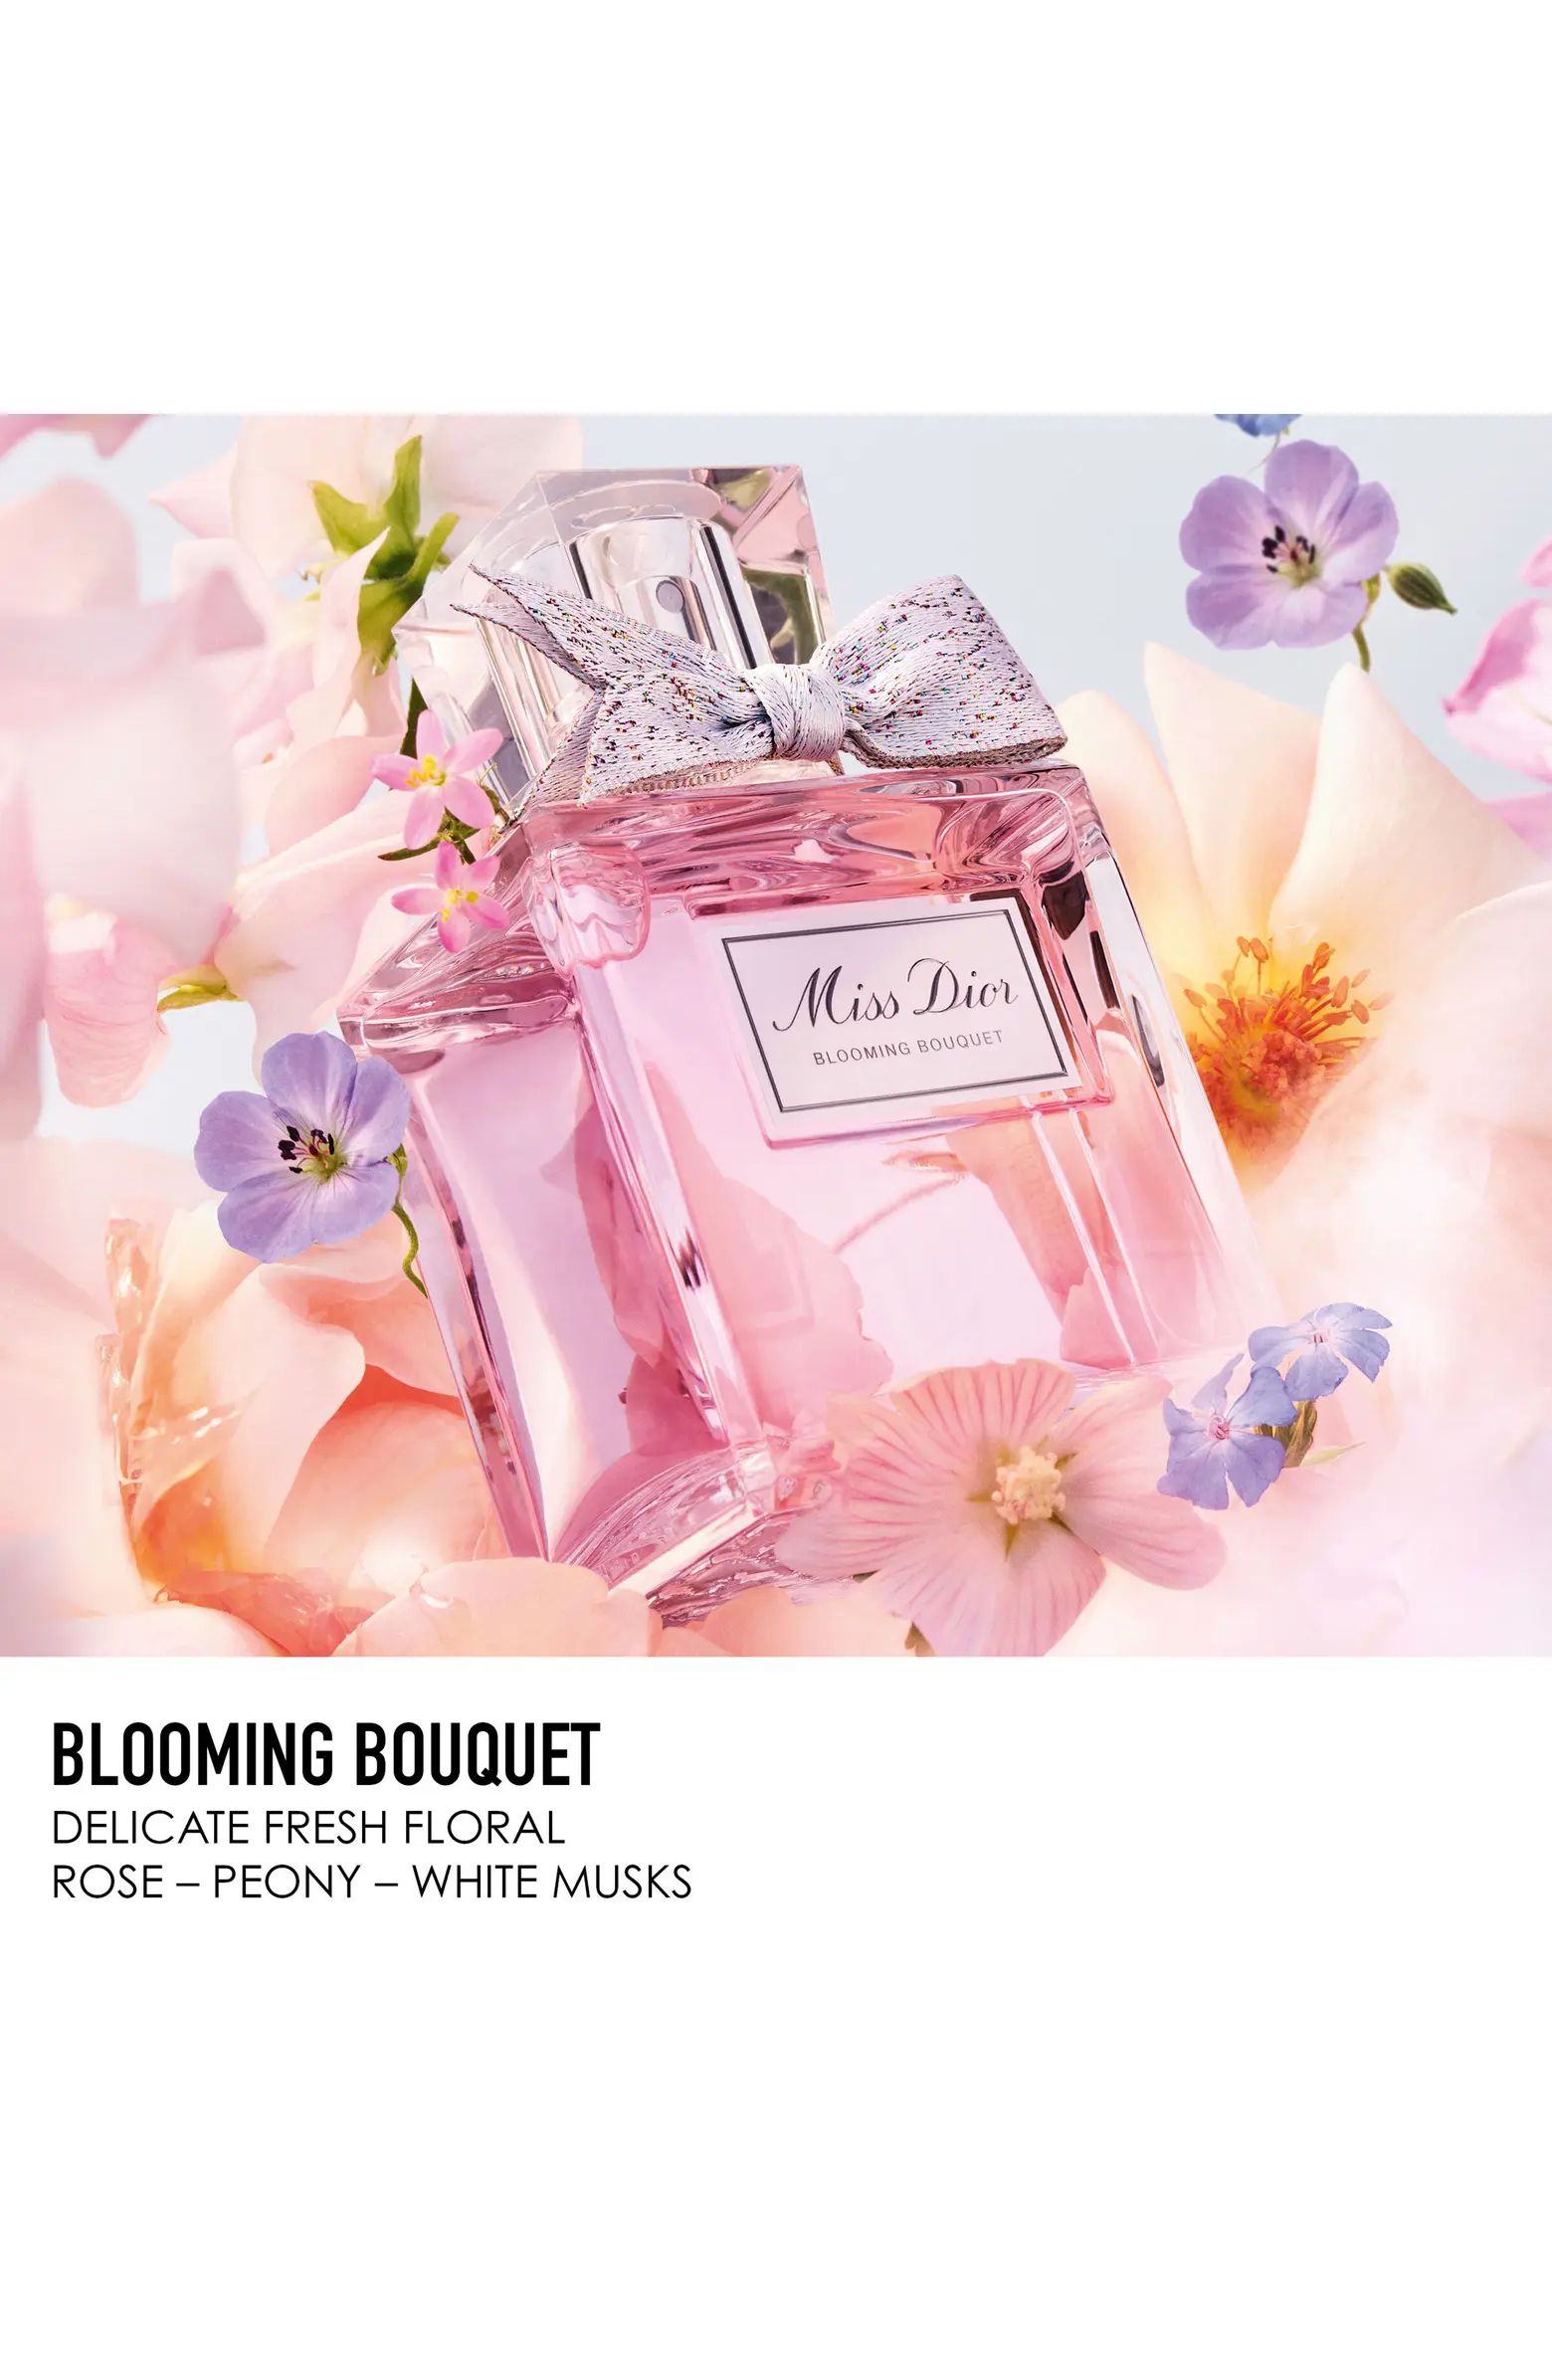 Miss Dior Blooming Bouquet Eau de Toilette | Nordstrom